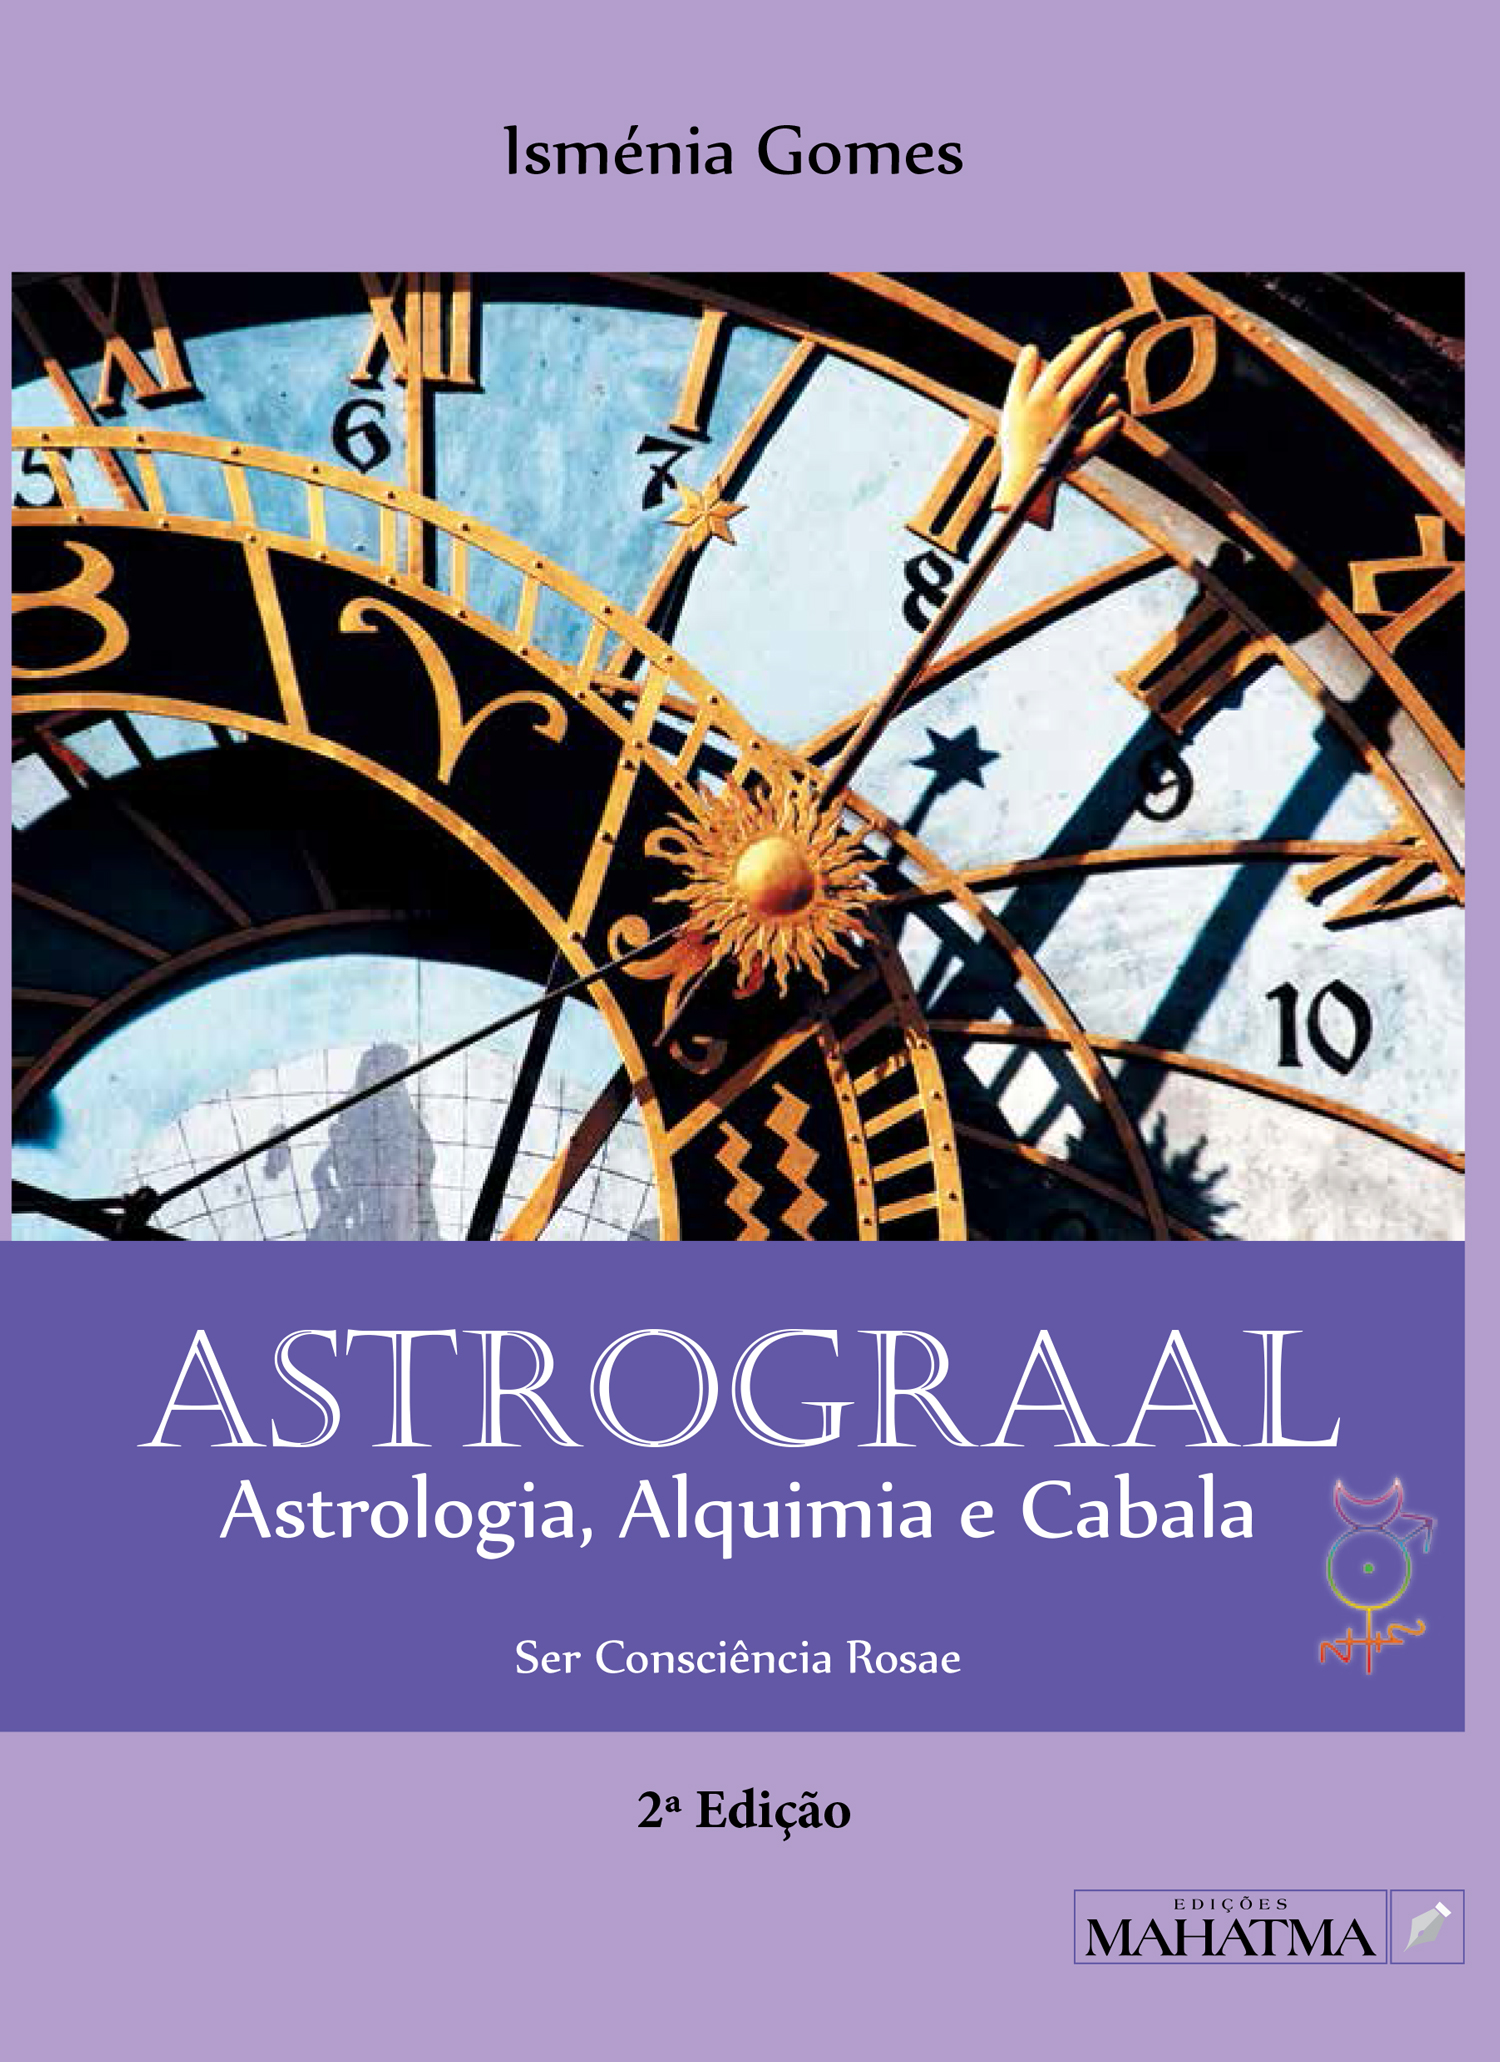 Astrograal - Astrologia, Alquimia e Cabala